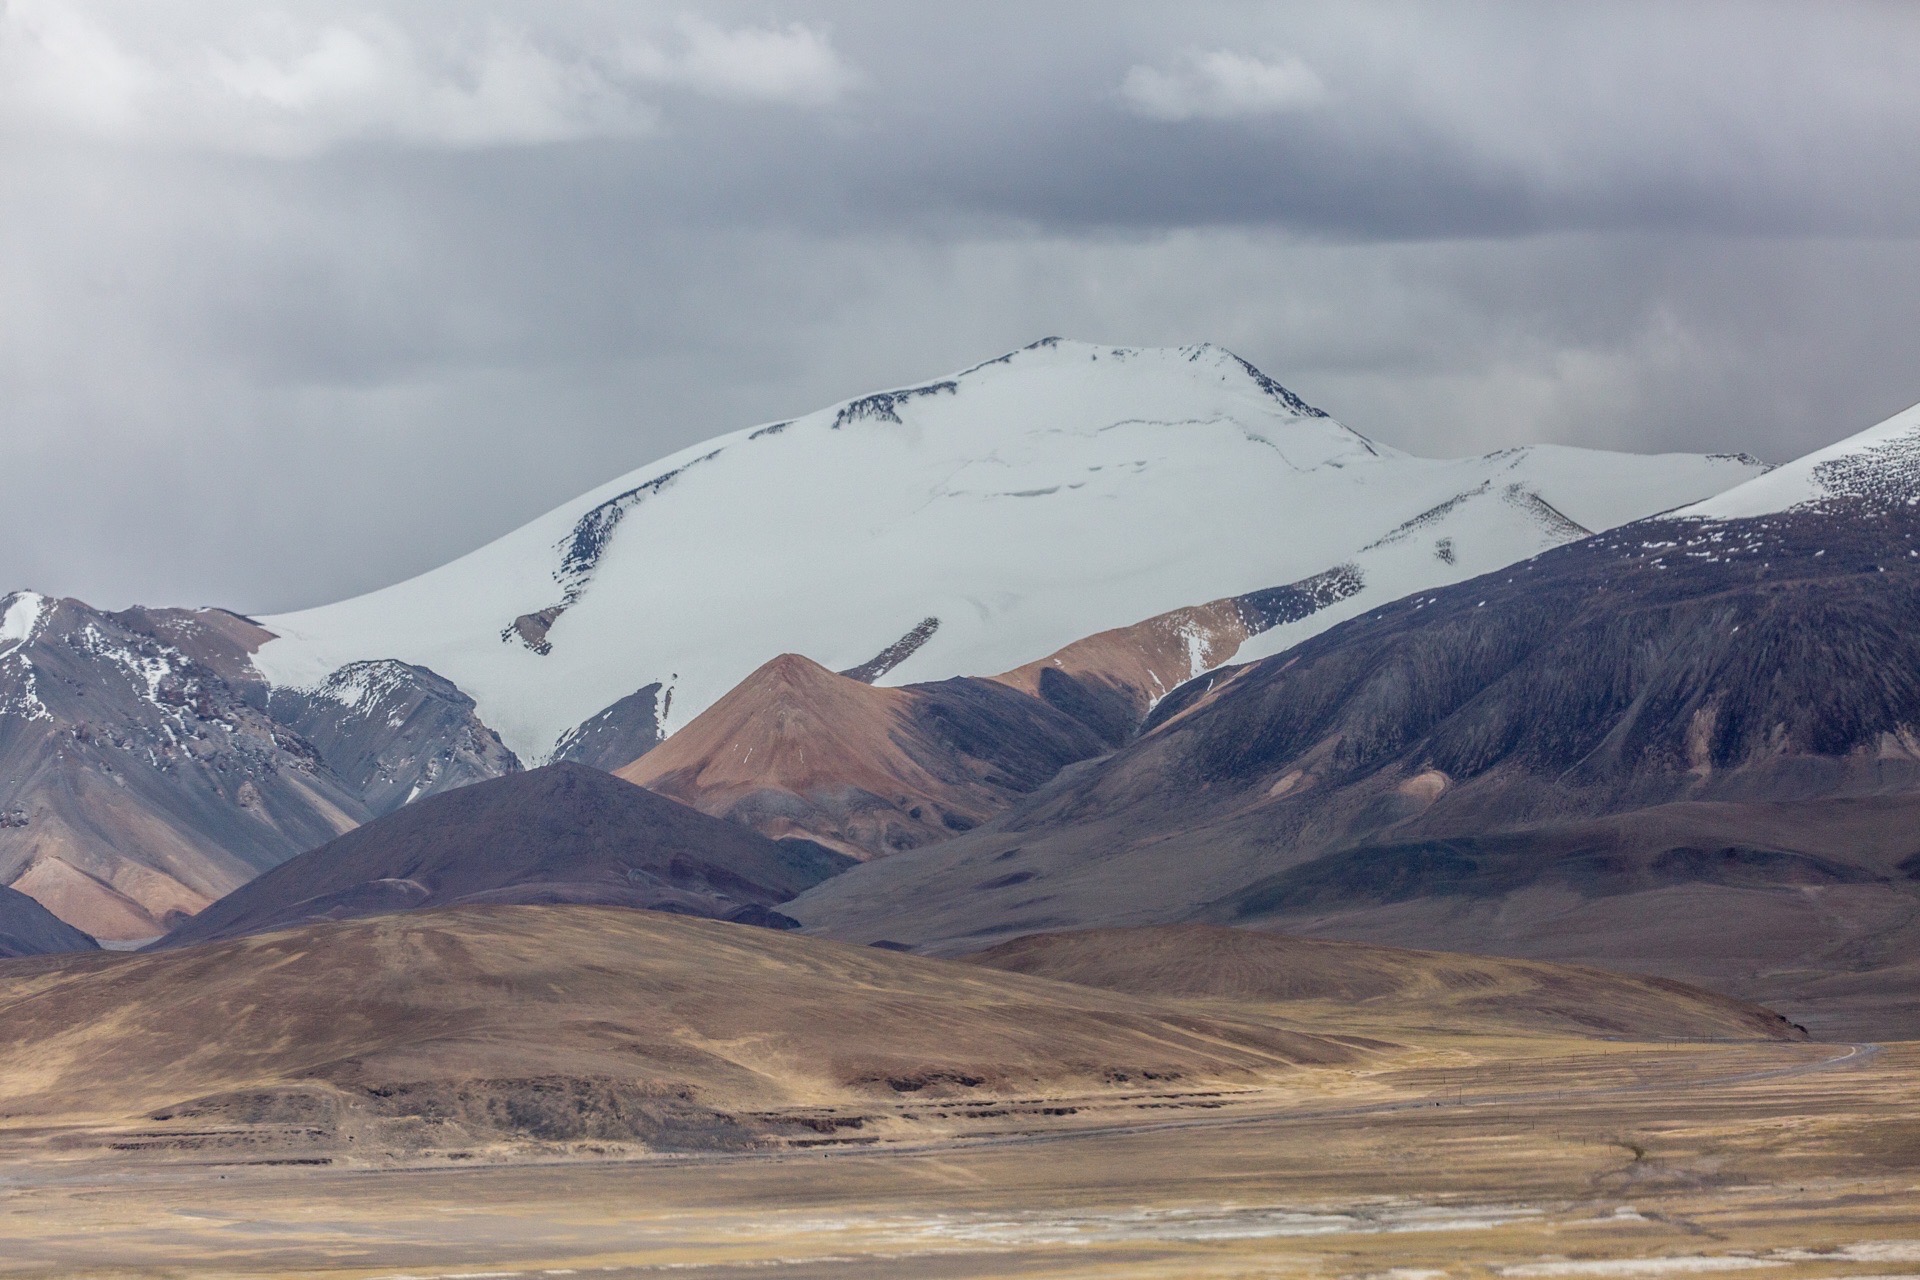 阿克赛钦意为中国的白石滩,地处昆仑山与喀喇昆仑山之间,新疆与西藏